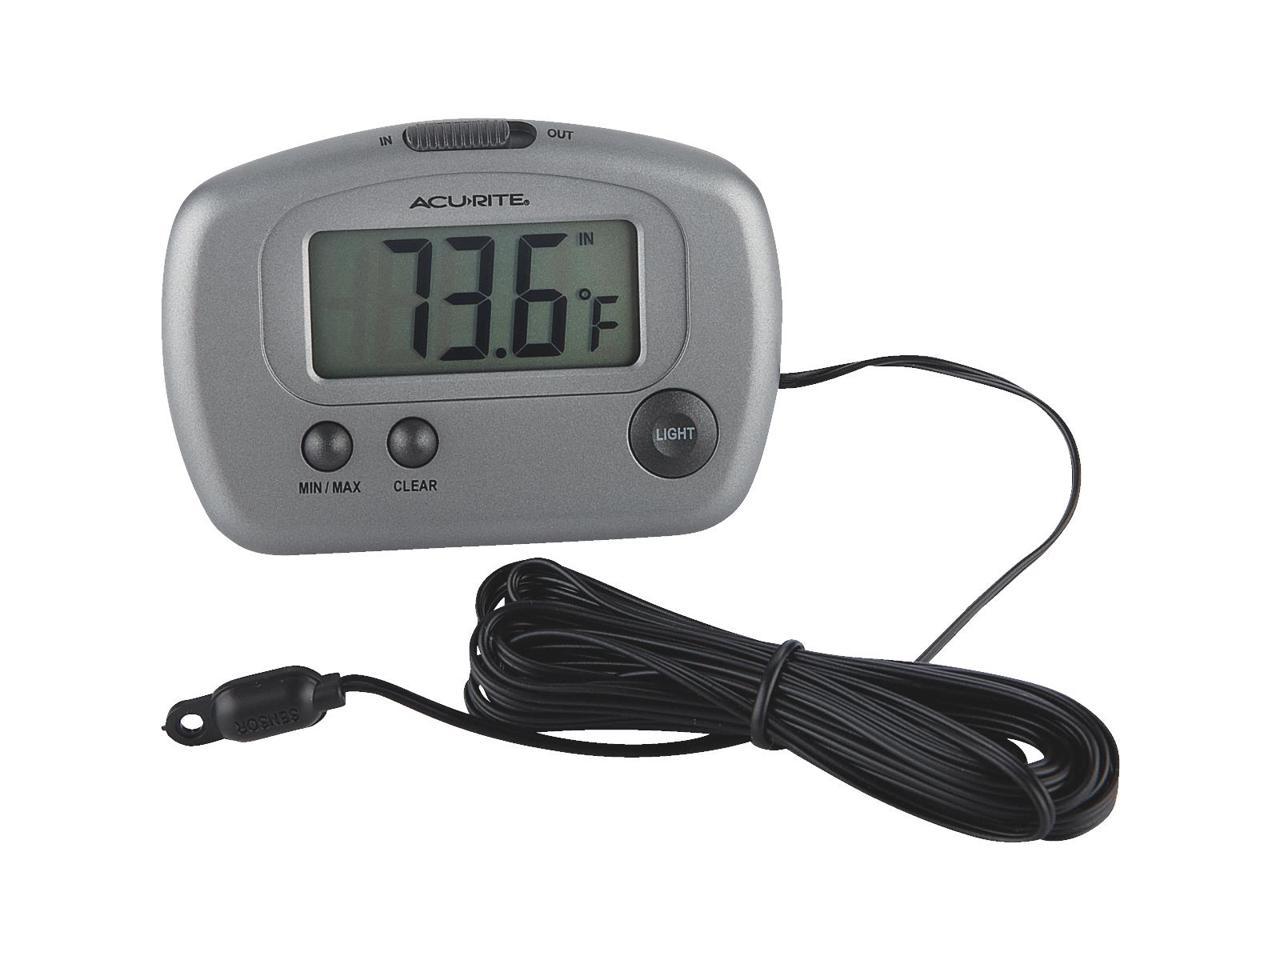 Acu Rite Acurite 00888a2 Indooroutdoor Digital Thermometer